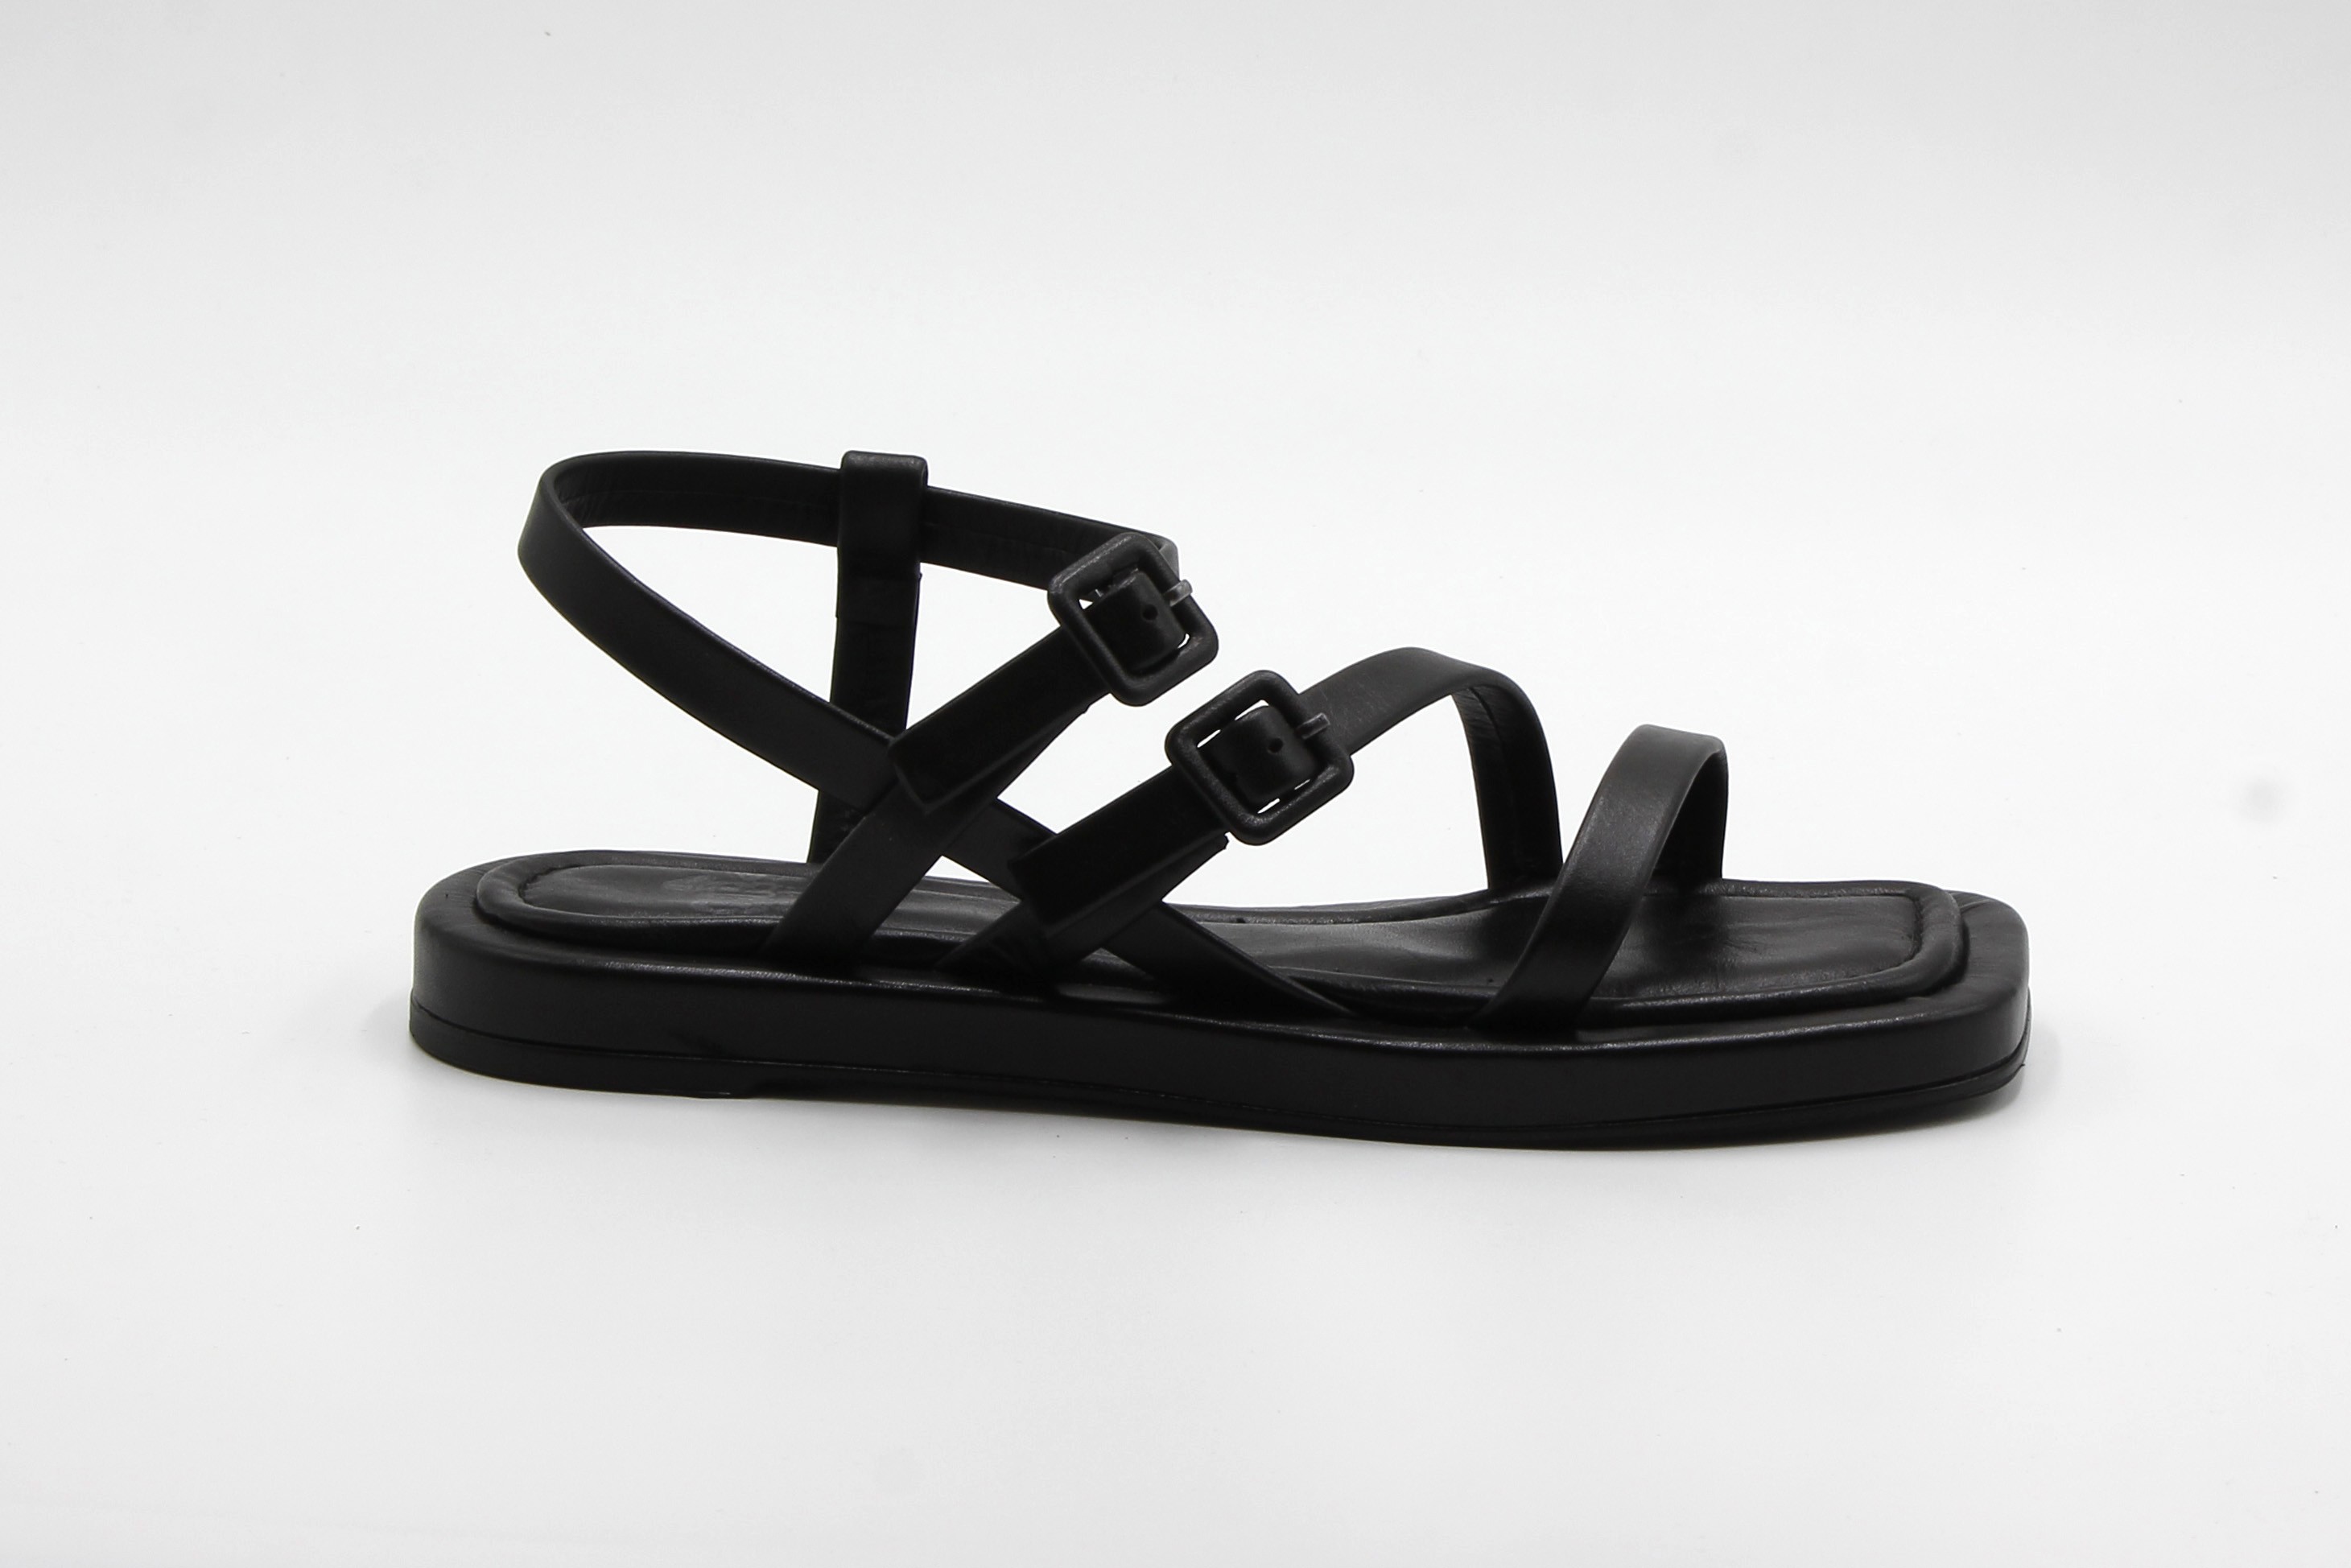 Sur Sandalet El Yapımı Hakiki Deri Kadın Günlük Sandalet - Siyah